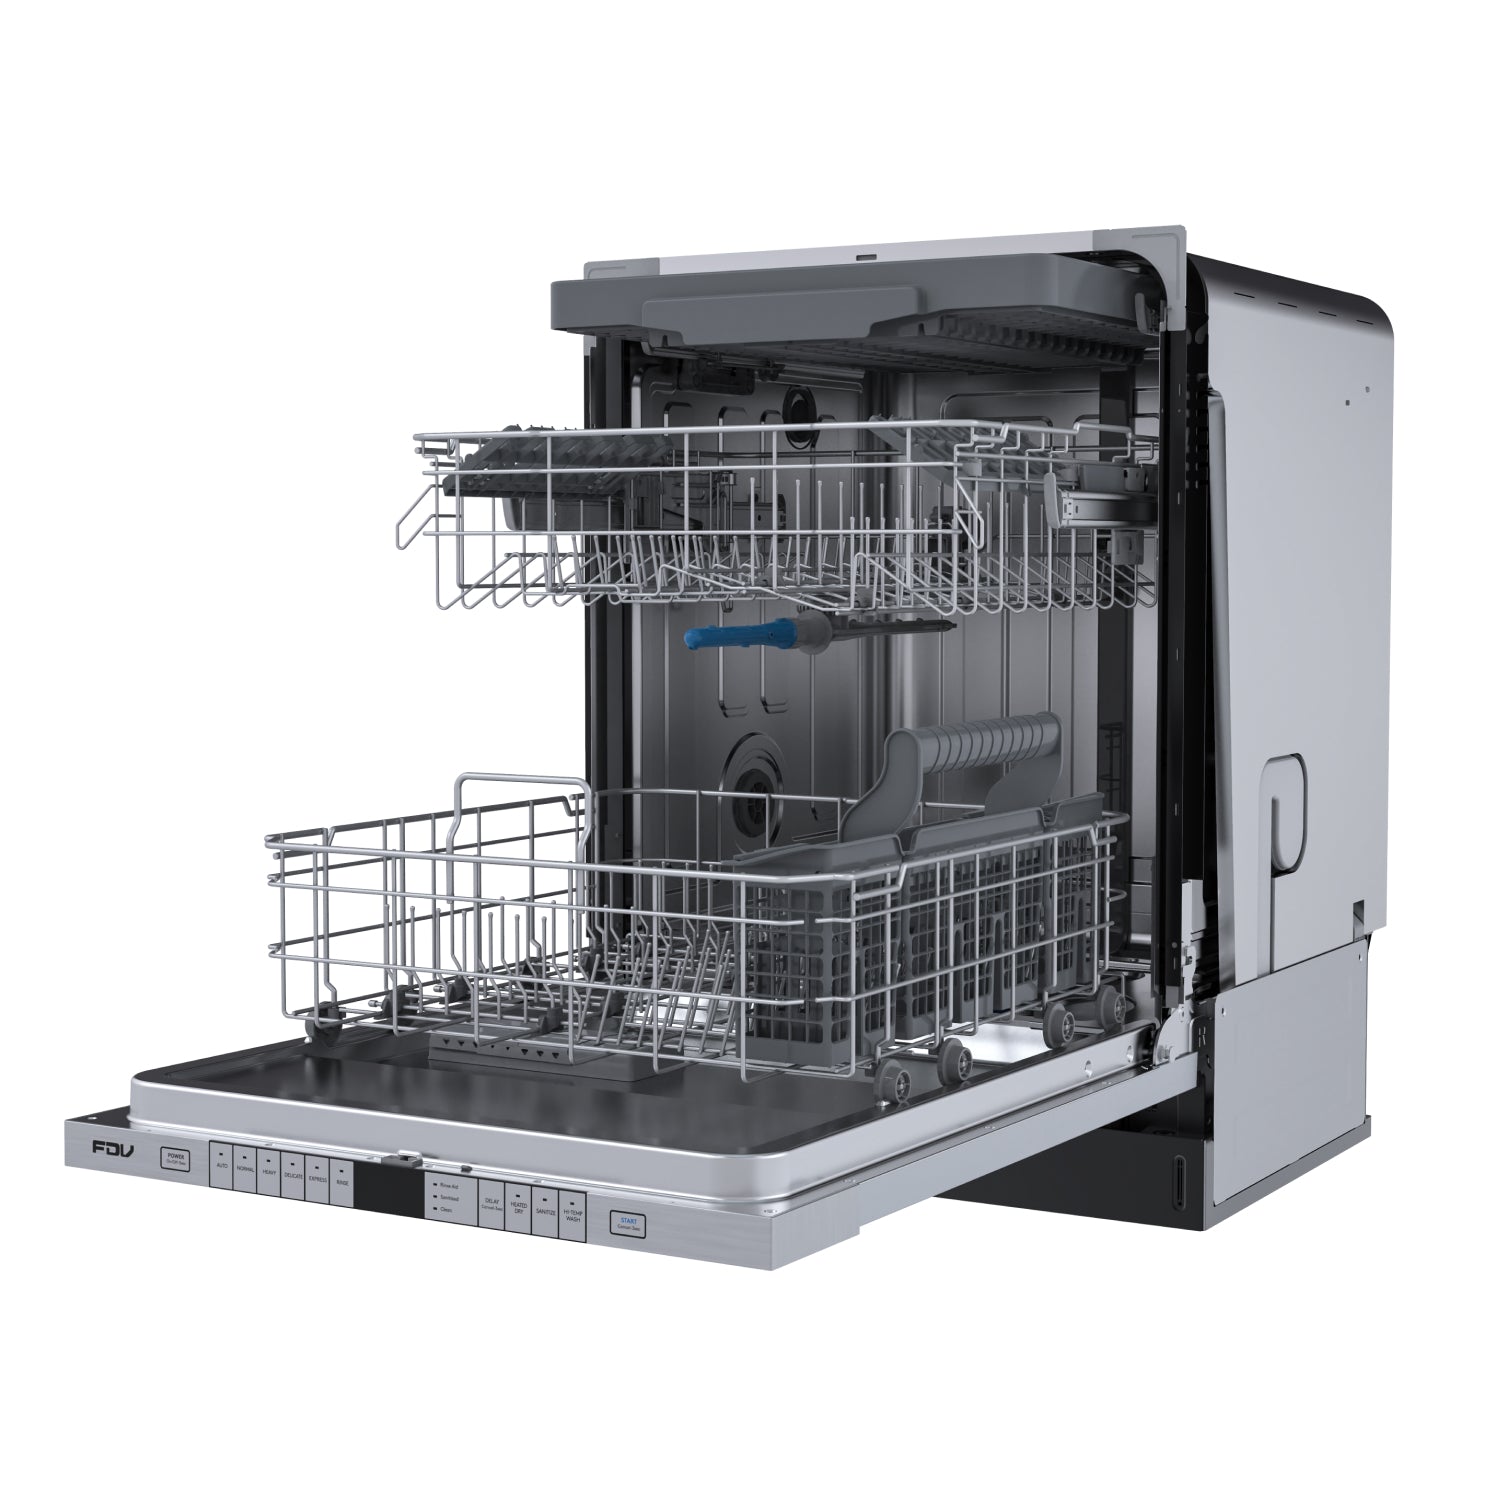 Smart 24 dishwasher